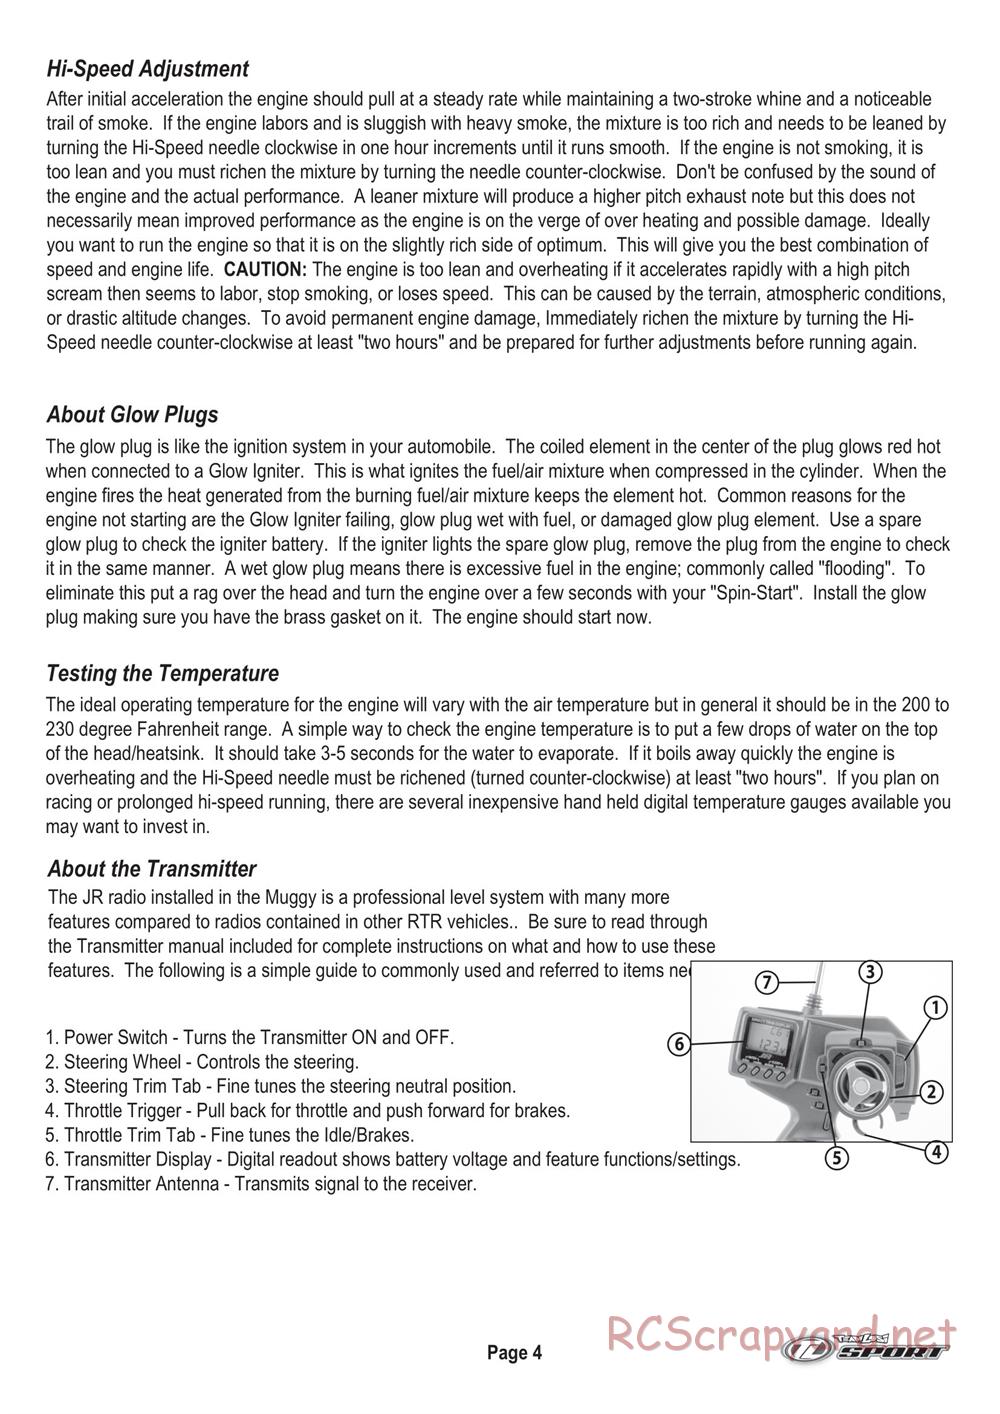 Team Losi - Muggy - Manual - Page 5